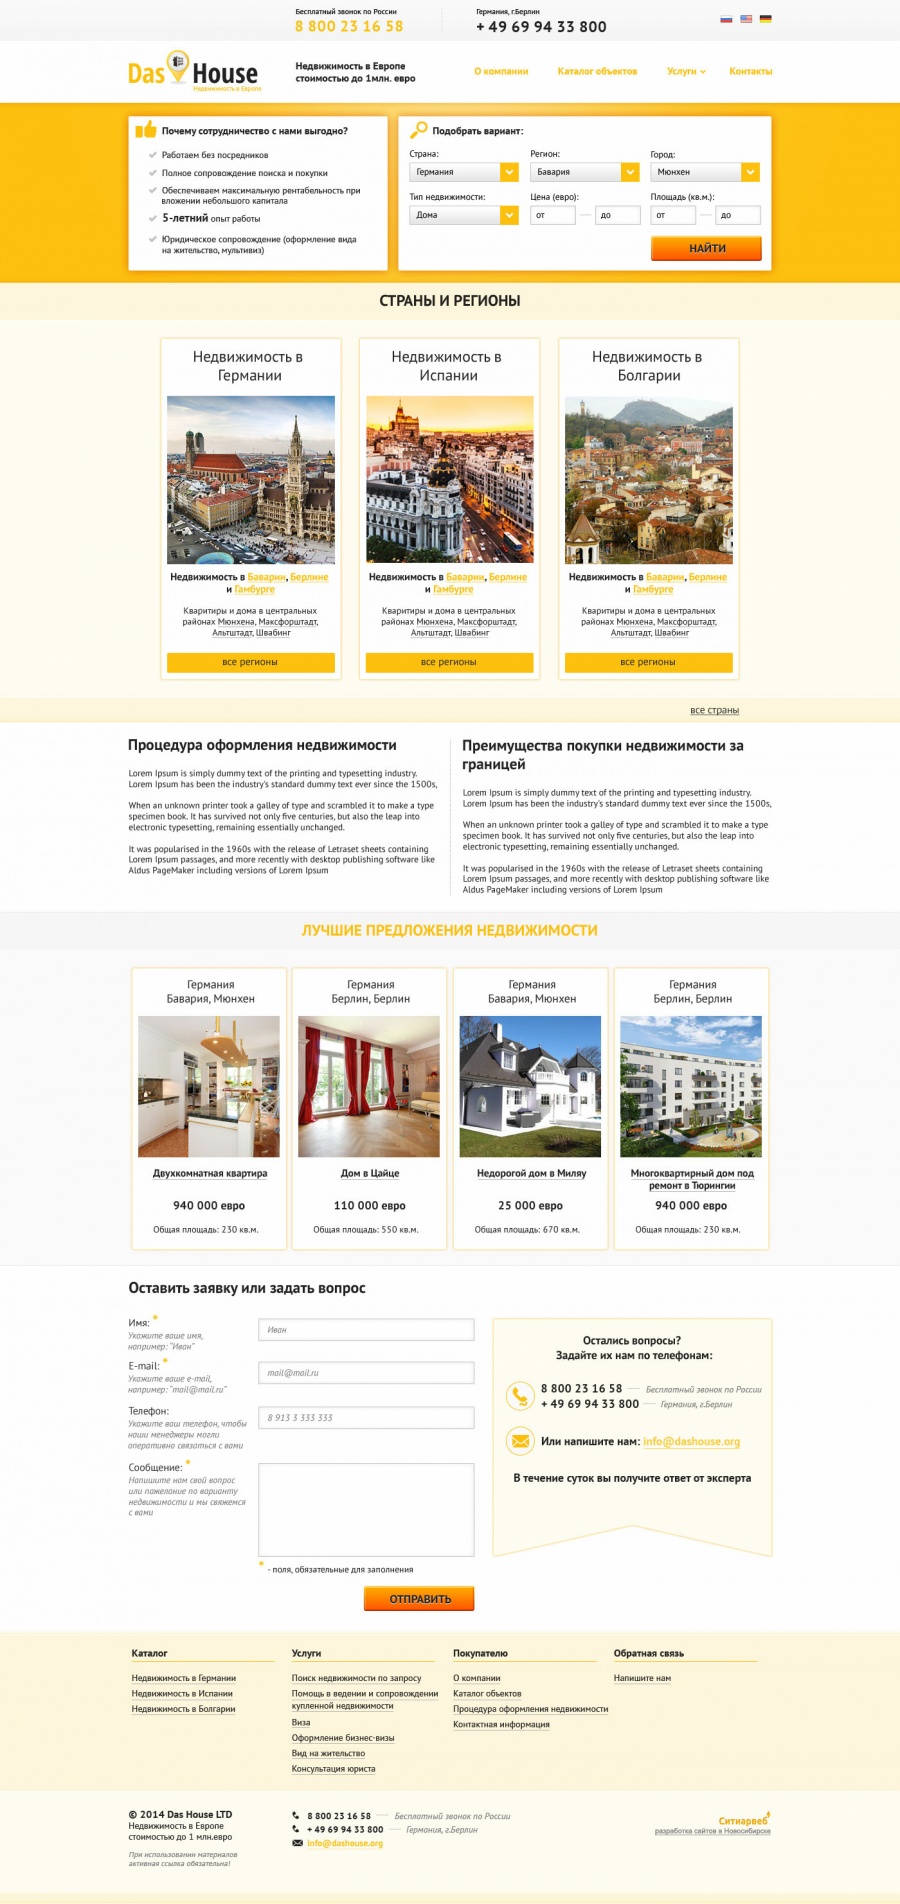 Разработка сайта для компании по продаже недвижимости в Германии